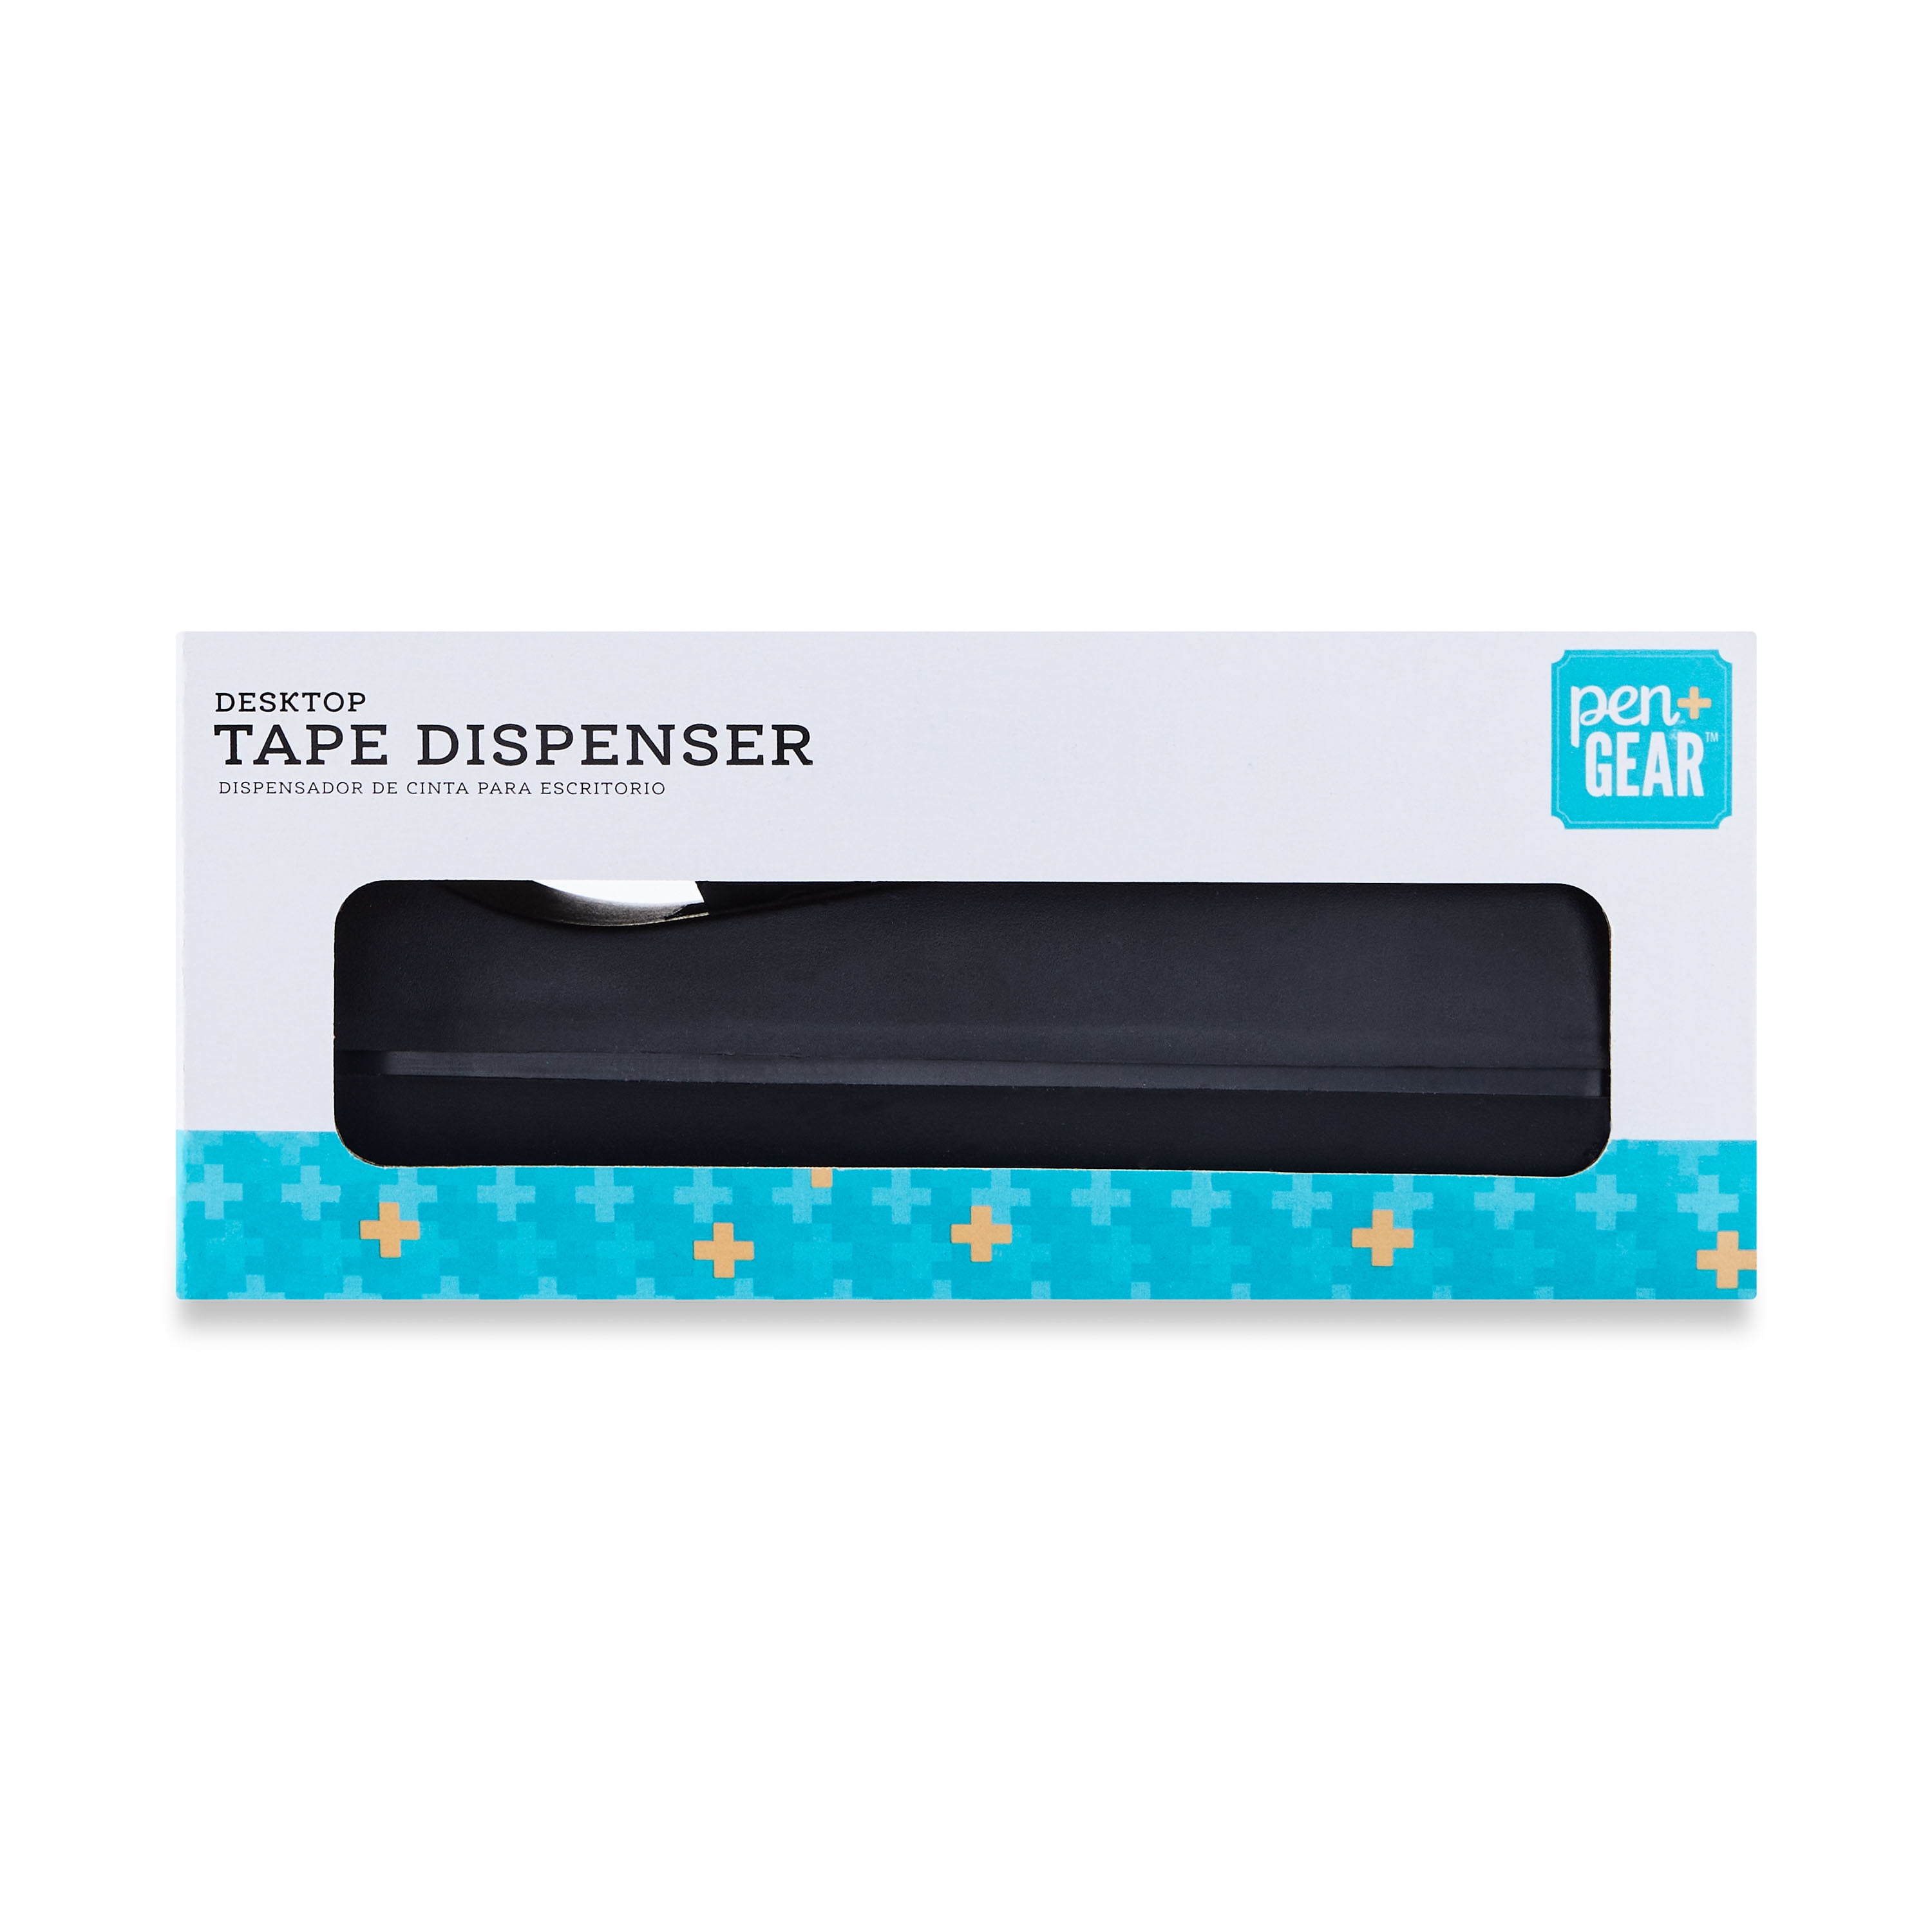 Pen + Gear Desktop Tape Dispenser for 1 Core, Black, Material HIPSCementStainless steelEva